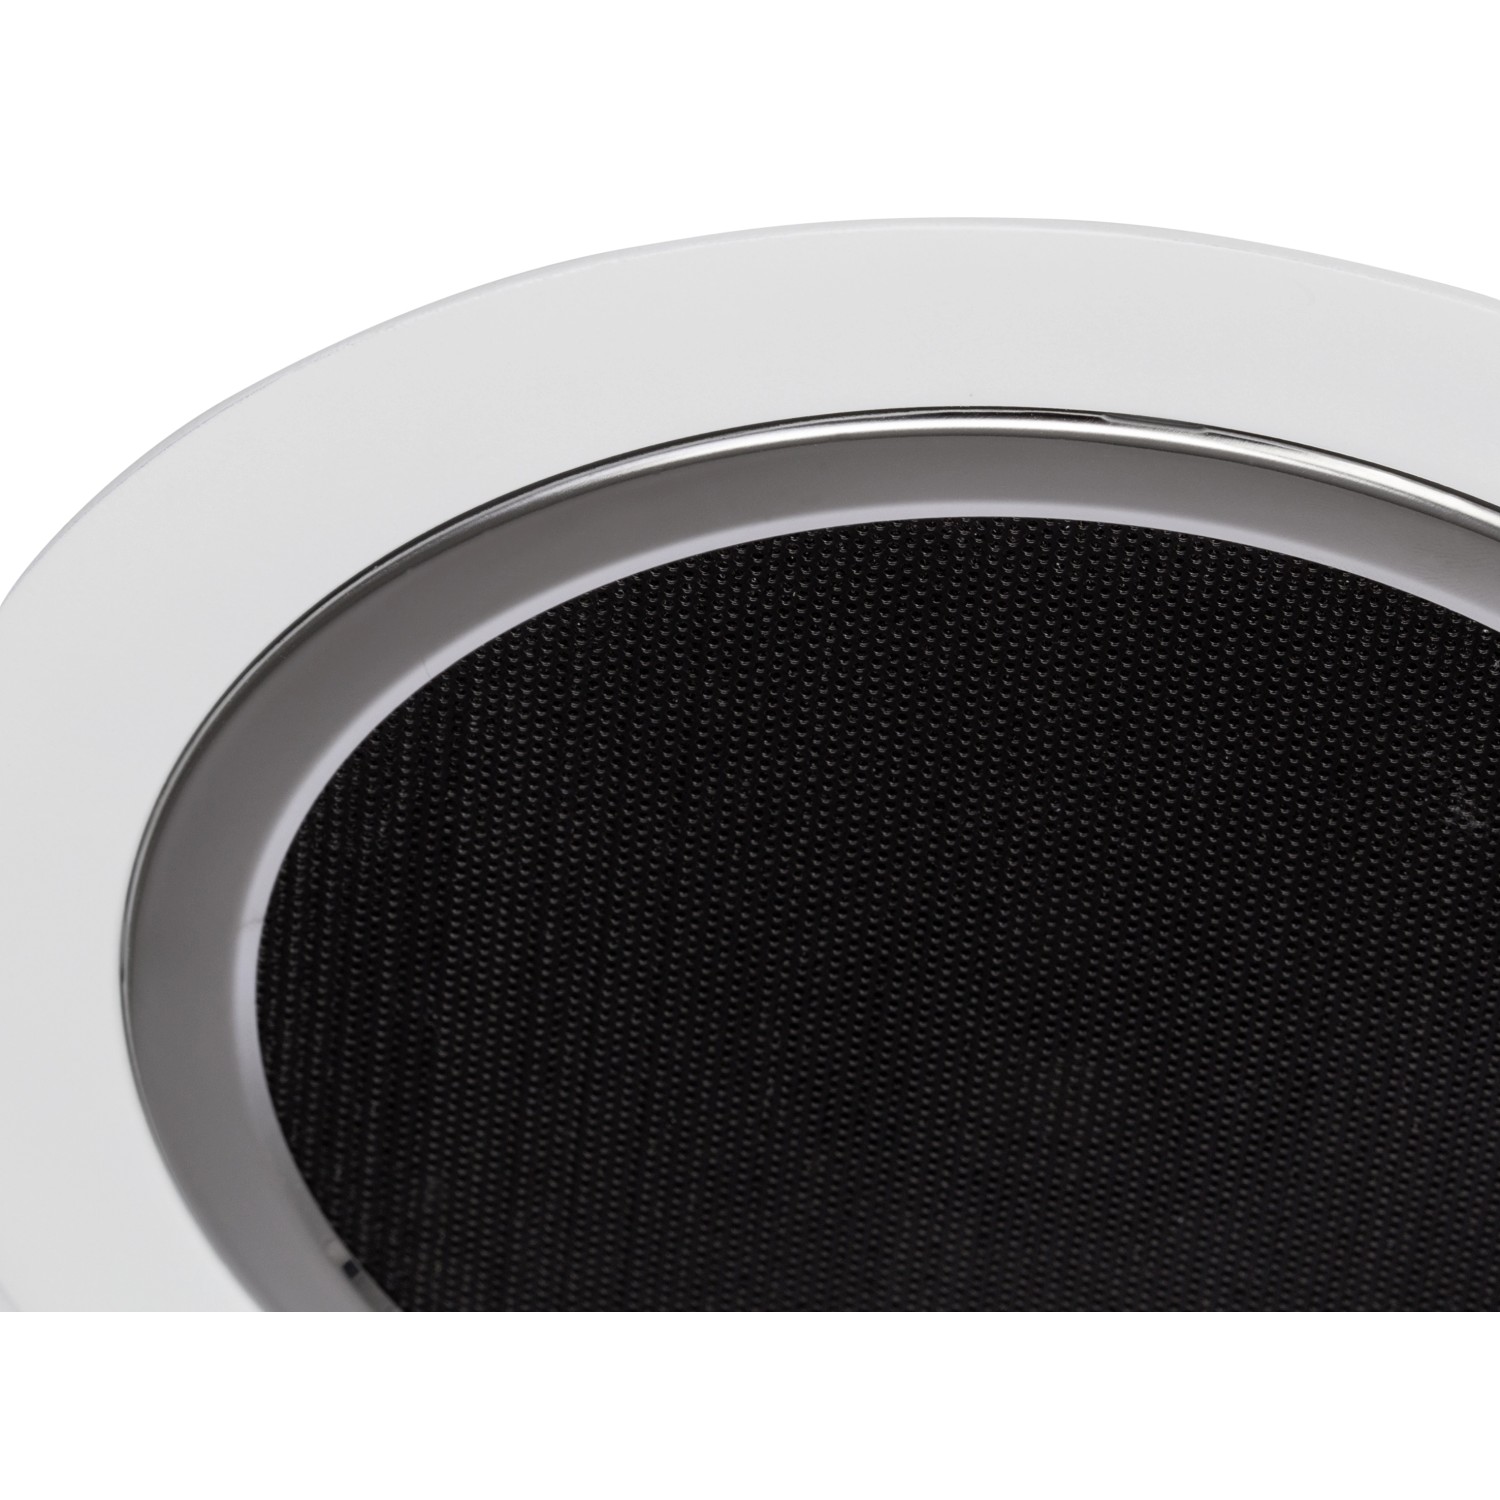 Tonic kaufen OBI AEG LED-Deckenleuchte mit bei Lautsprecher